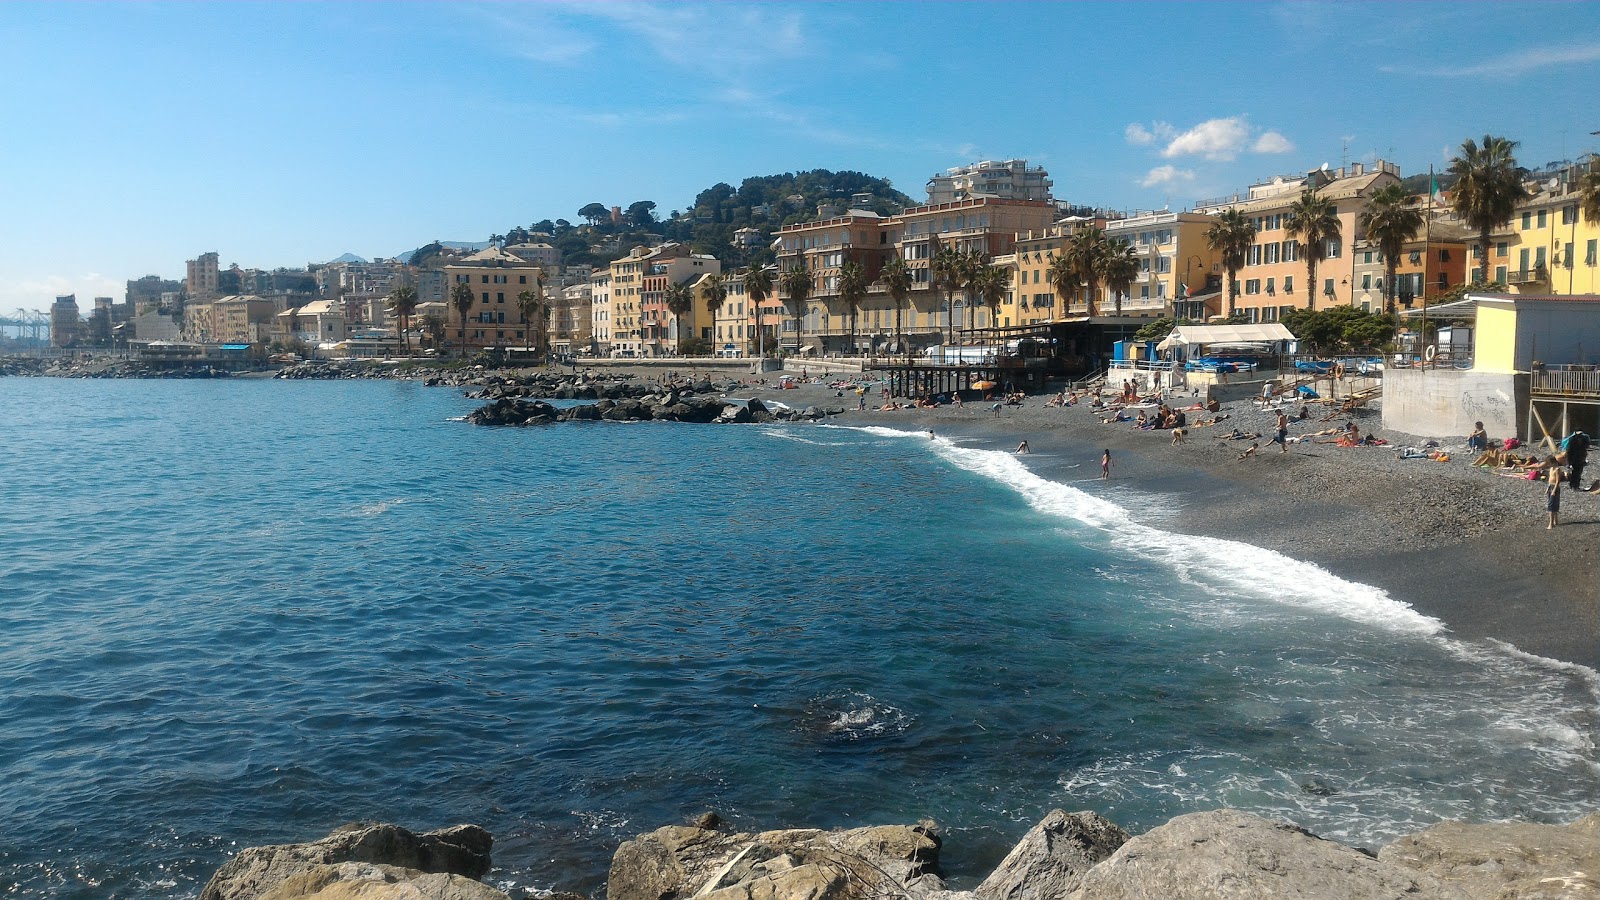 Genova last beach'in fotoğrafı küçük koylar ile birlikte